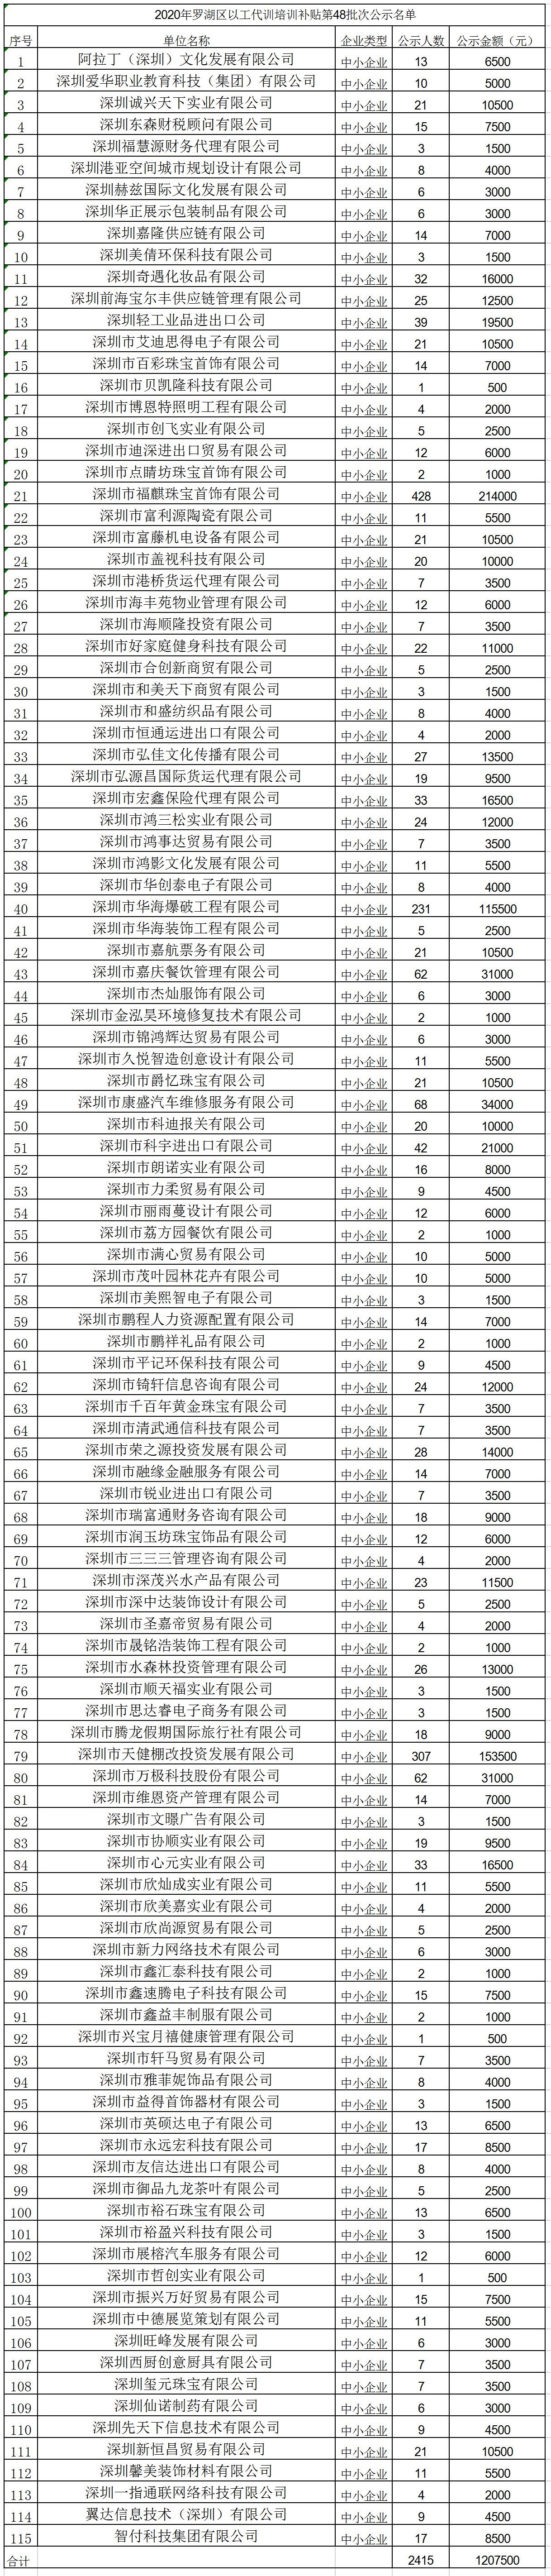 2020年深圳市罗湖区以工代训培训补贴第48批次公示名单.jpg